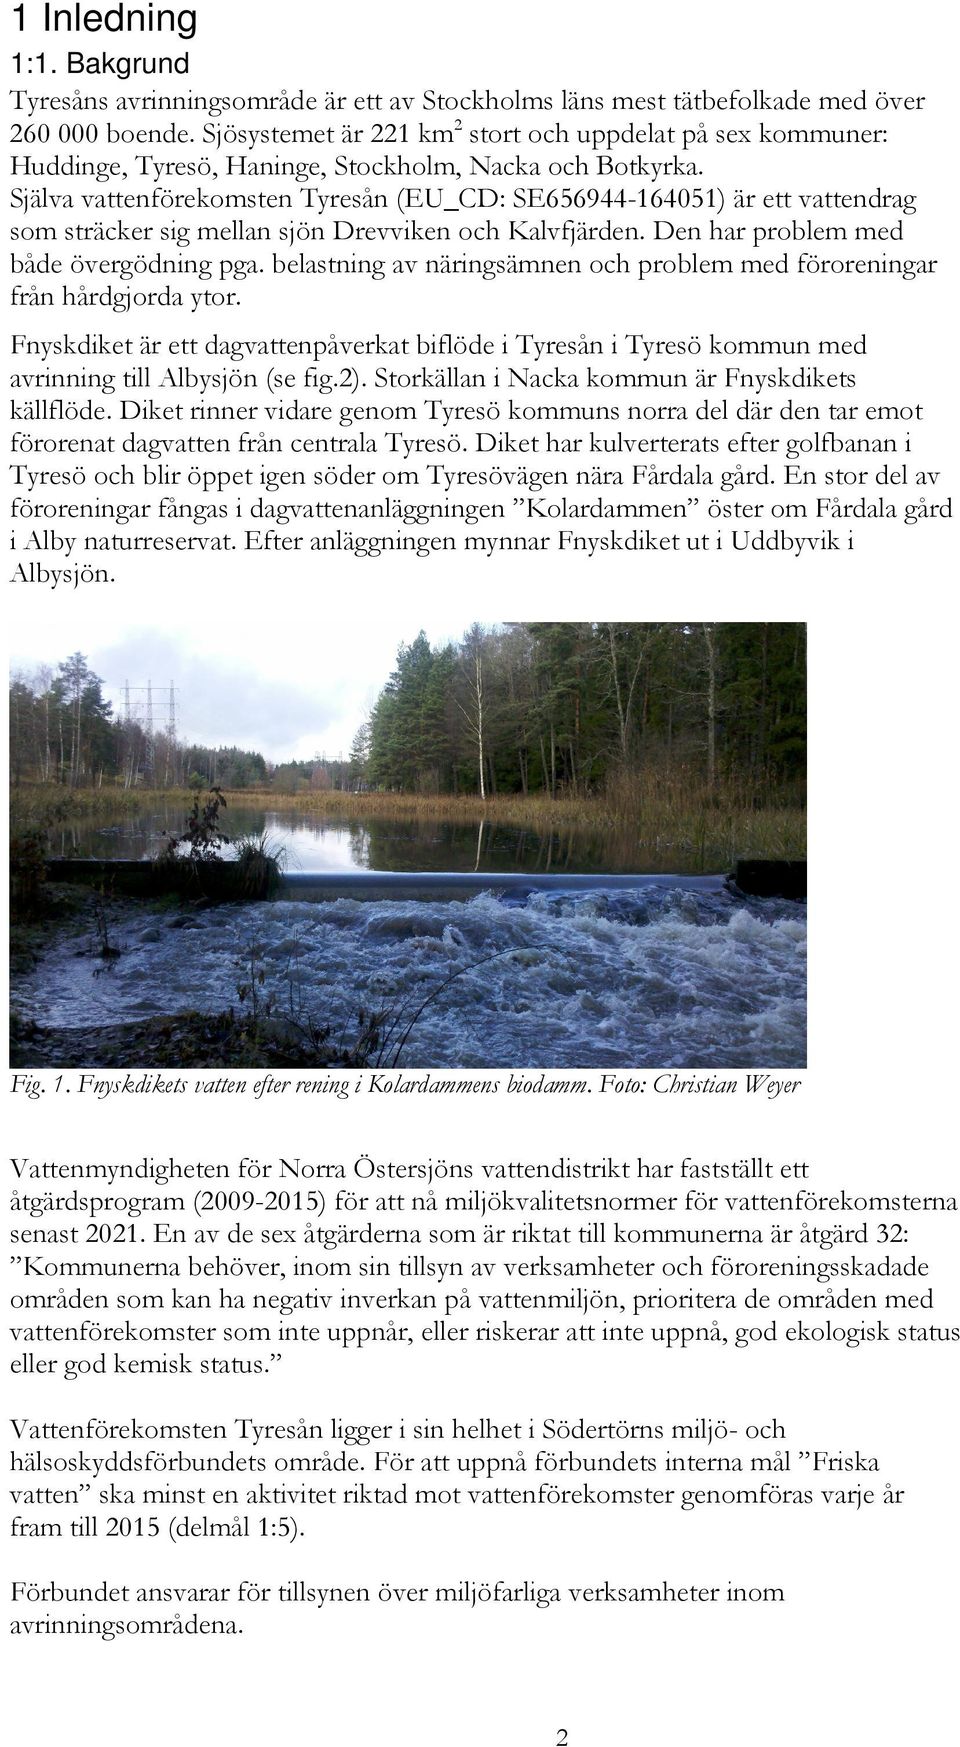 Själva vattenförekomsten Tyresån (EU_CD: SE656944-164051) är ett vattendrag som sträcker sig mellan sjön Drevviken och Kalvfjärden. Den har problem med både övergödning pga.